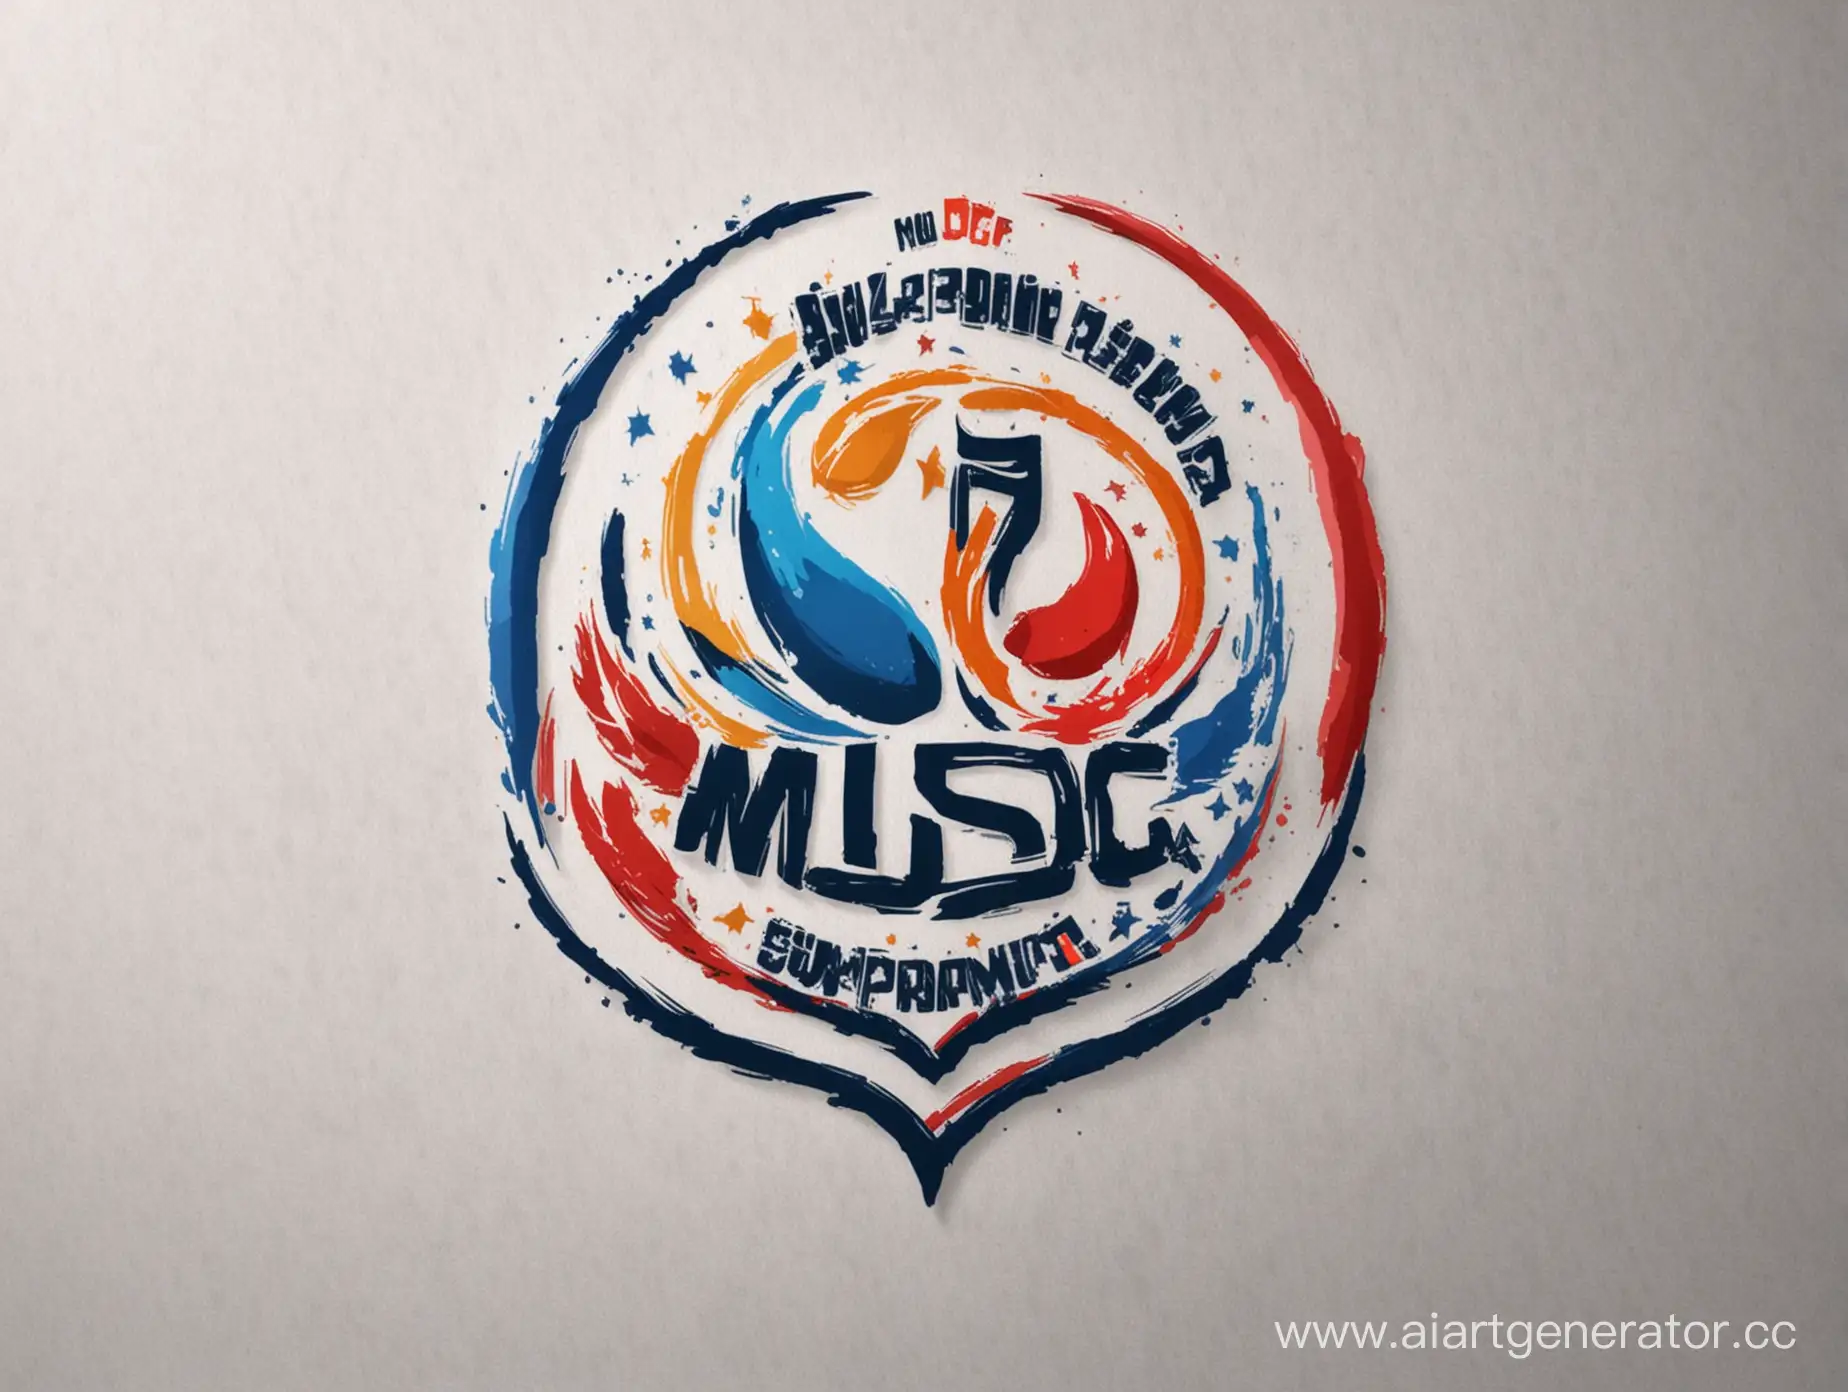  сделать логотип к проекту Программа поддержки музыкальной деятельности в Донецкой Народной Республике для молодежи